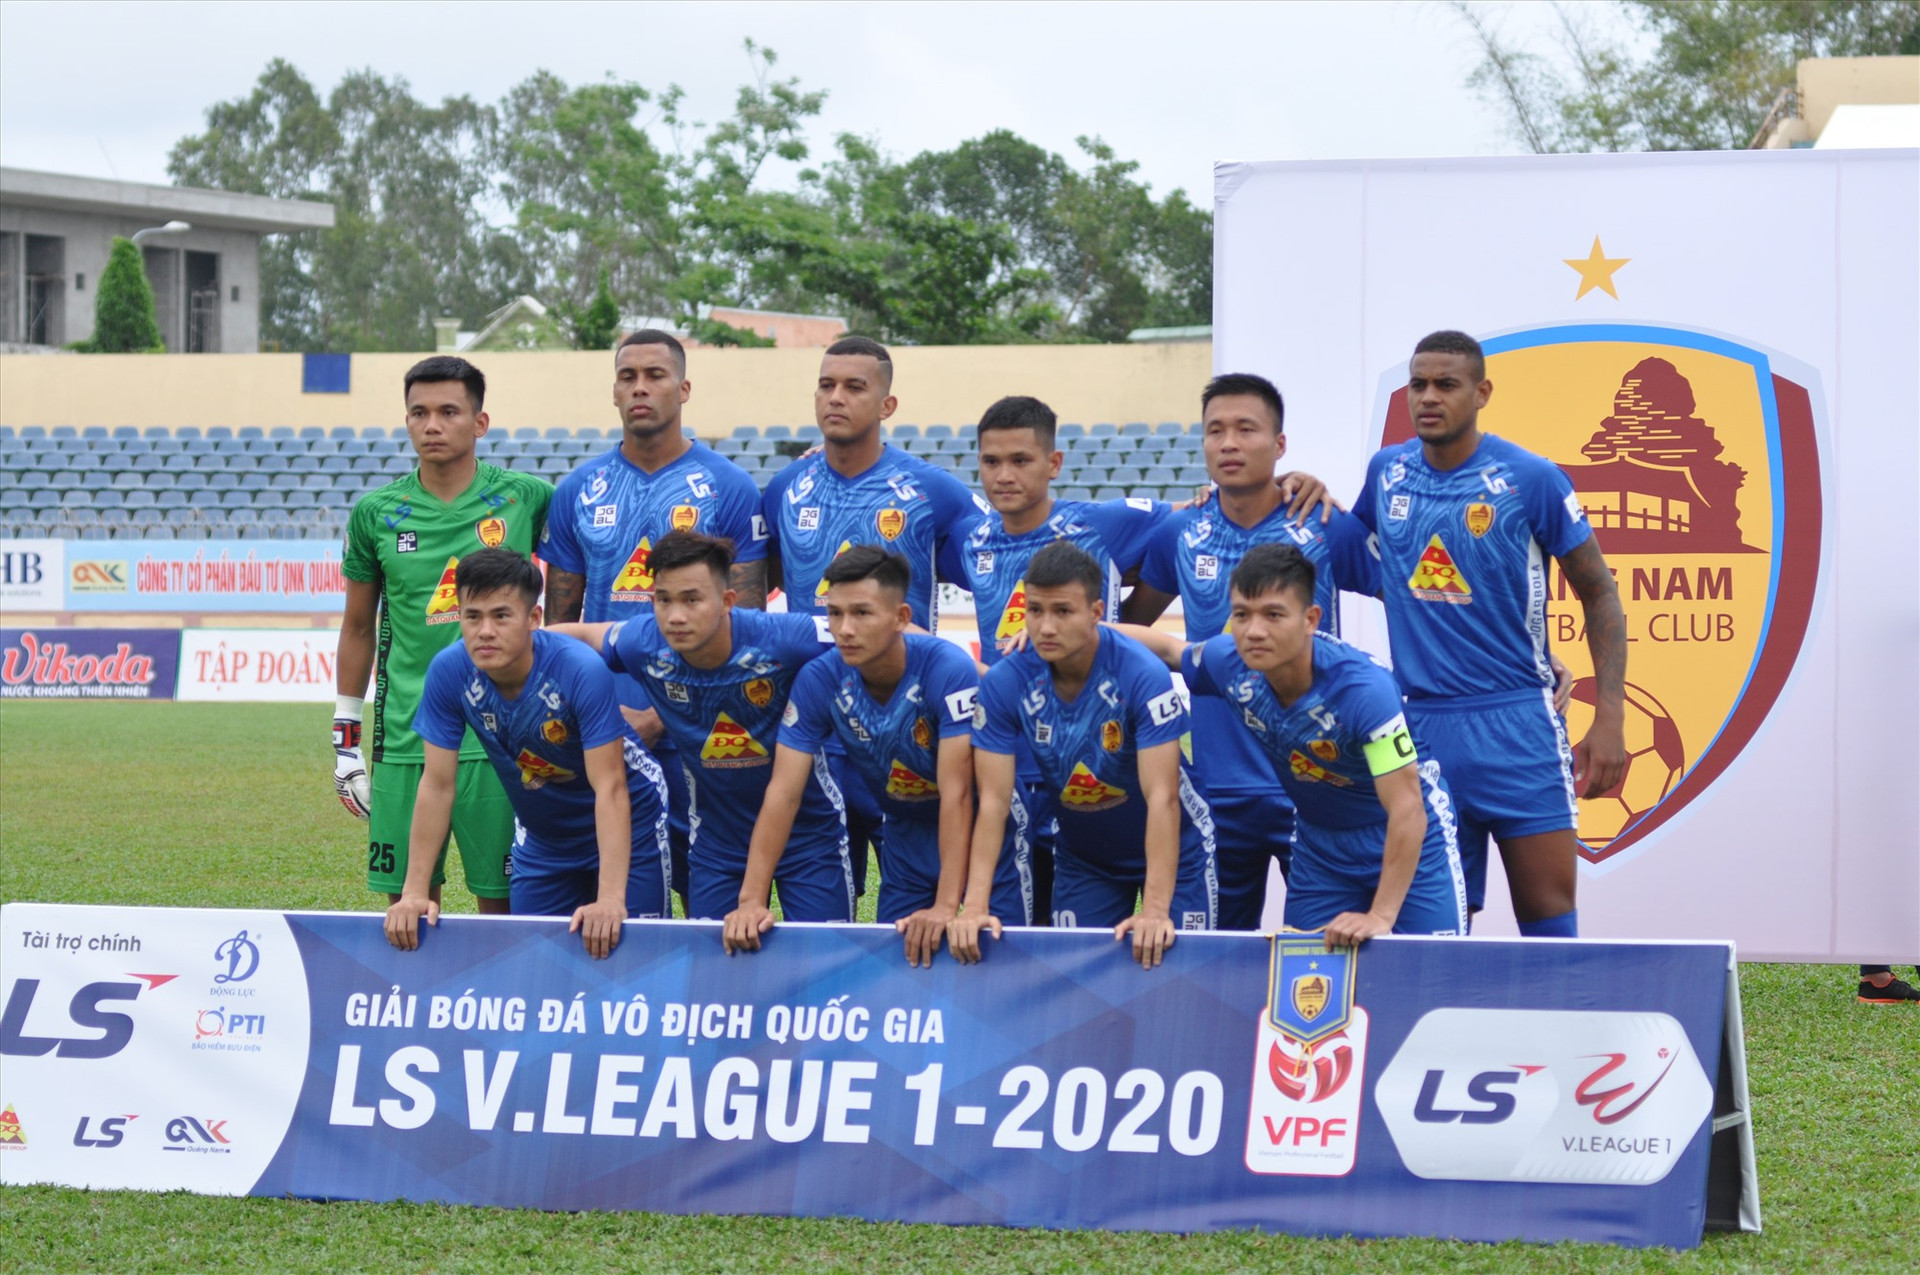 Nguyễn Văn Trạng (vị trí giữa hàng trước) ra sân ở đội hình xuất phát 2 trận liên tiếp. Ảnh: A.S